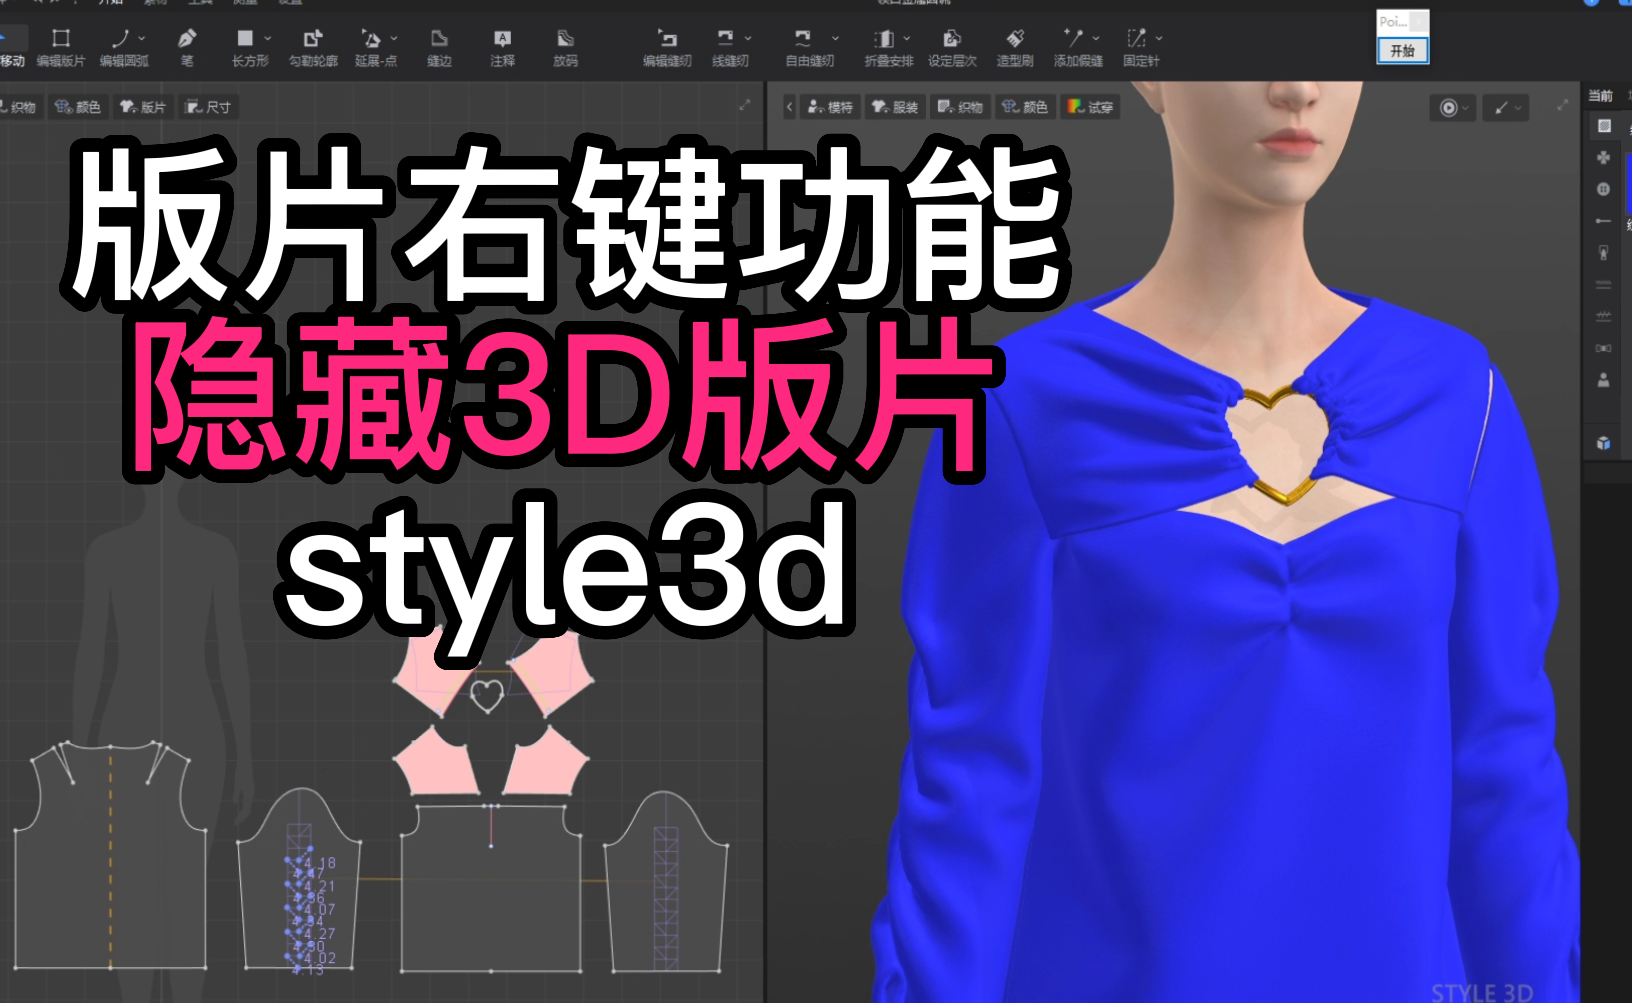 43版片右键功能-隐藏3D版片style3d.png